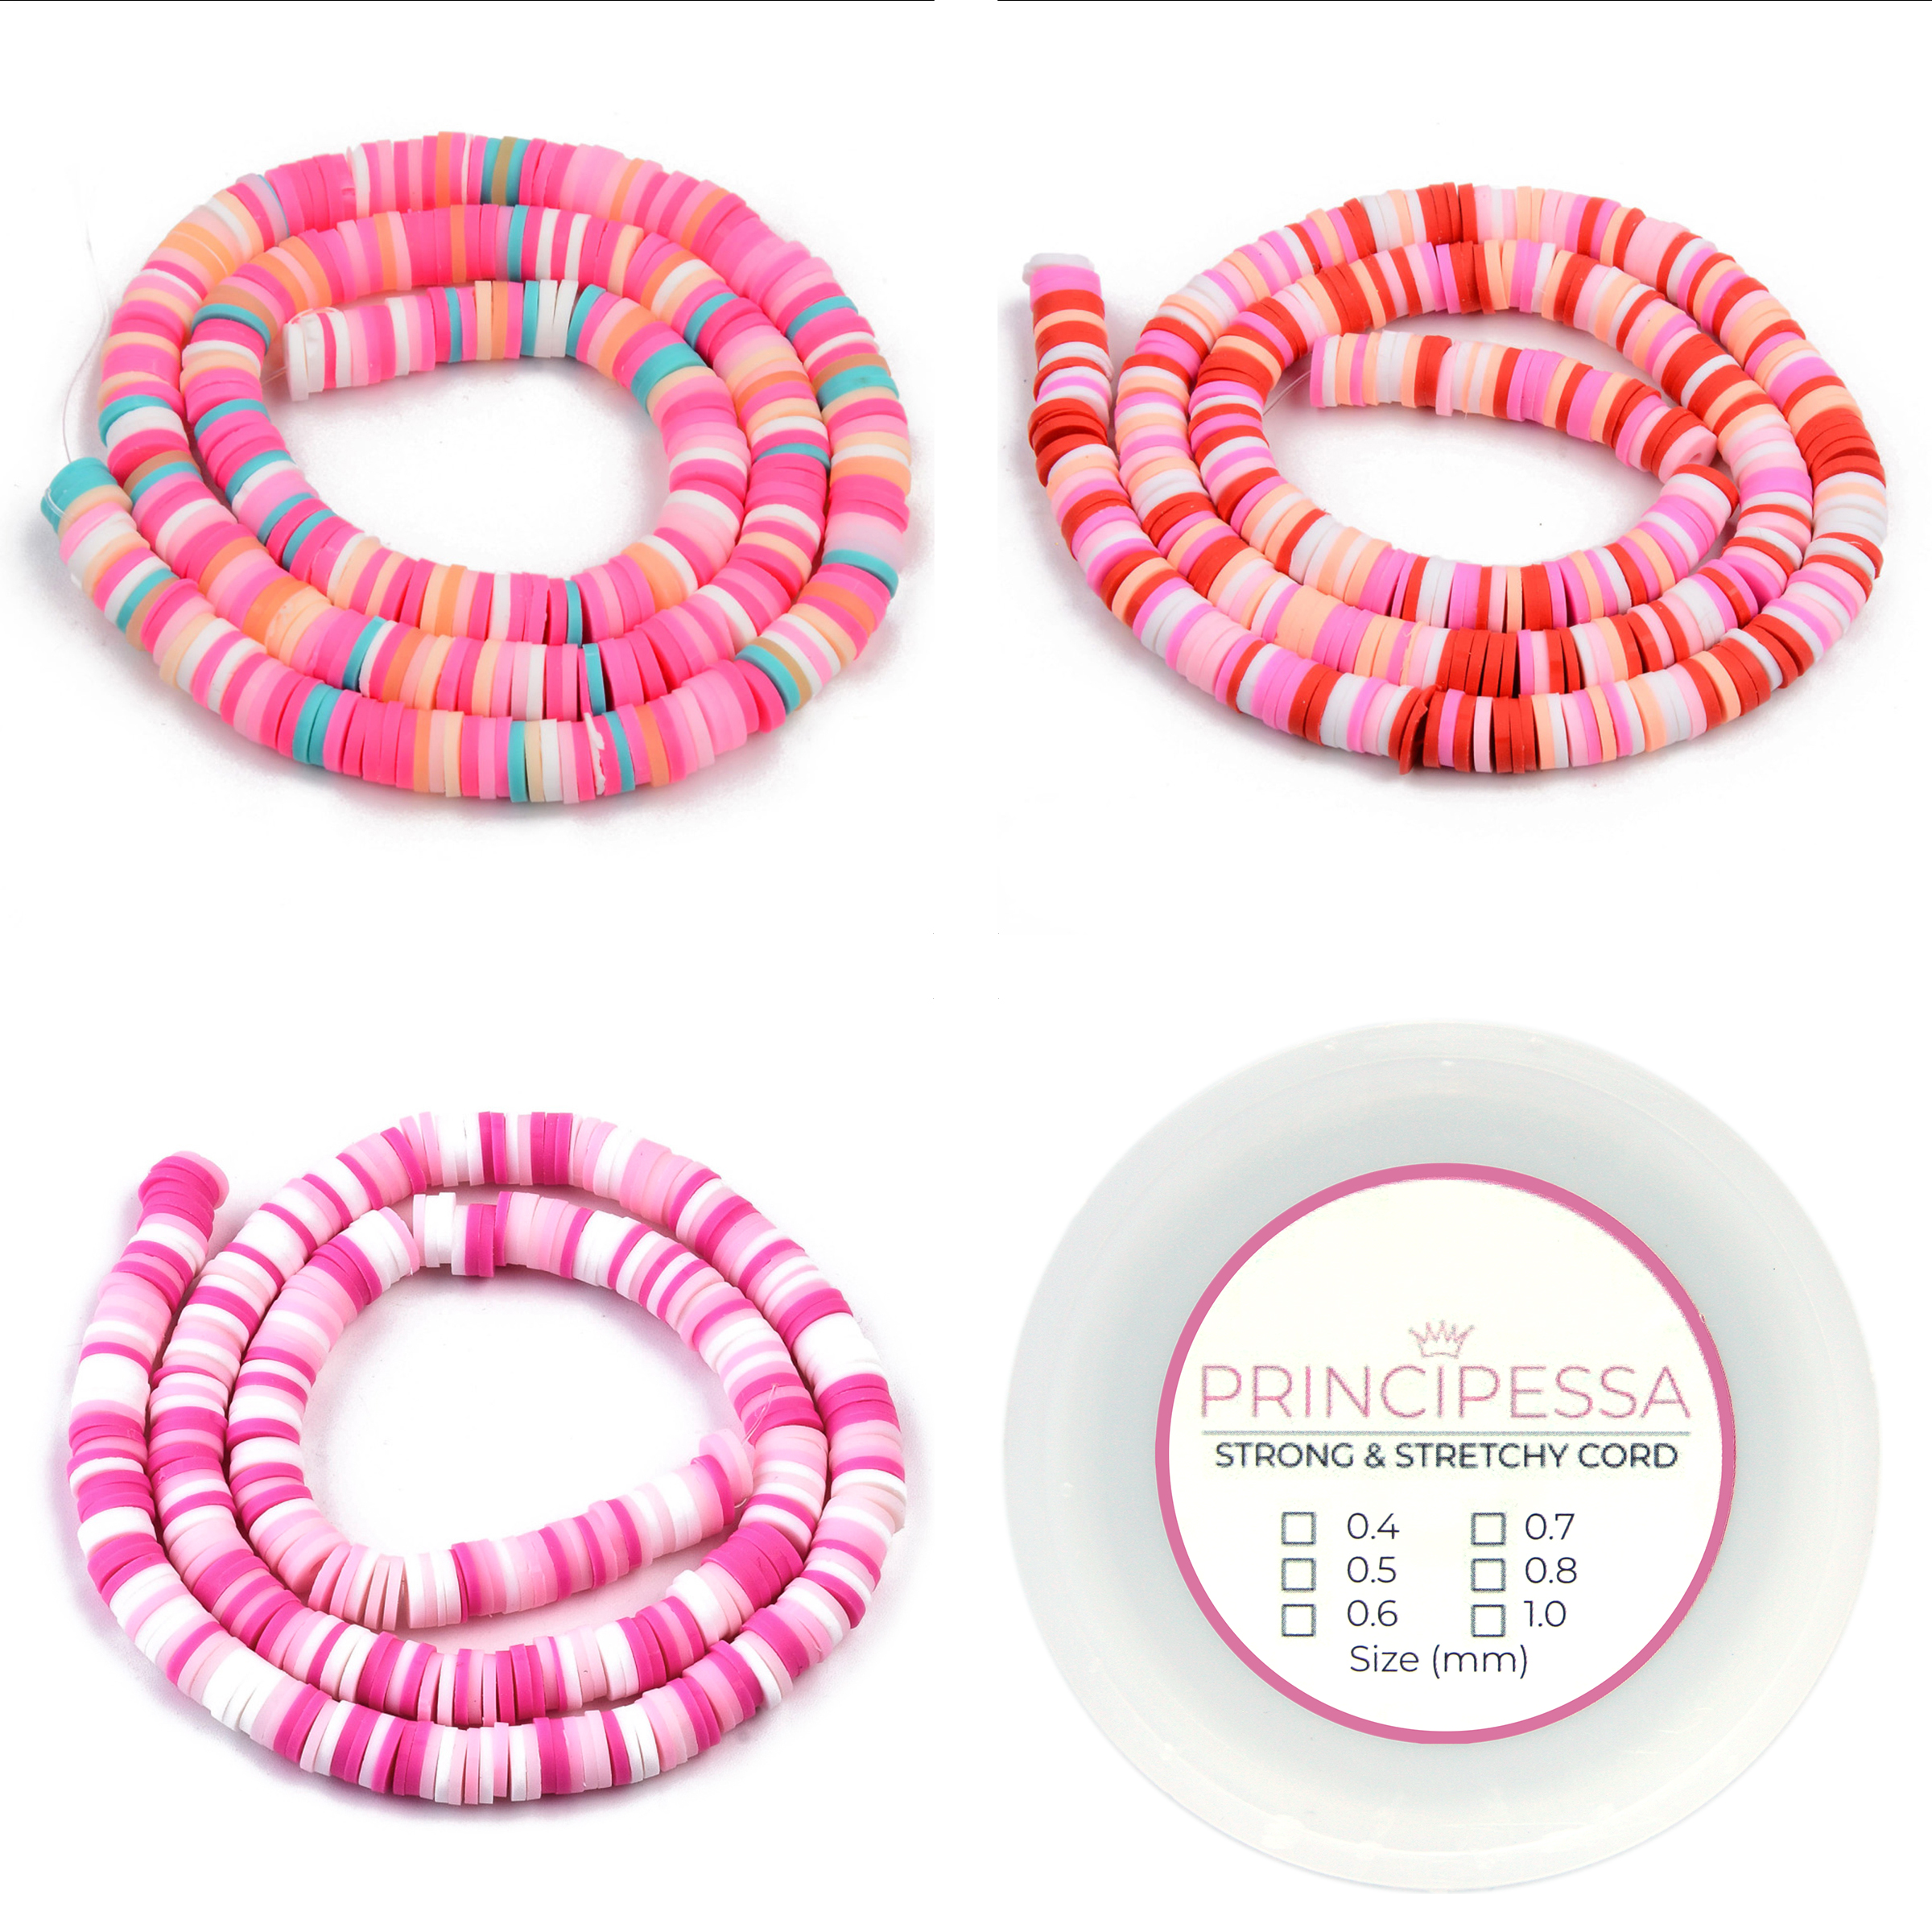 Principessa Katsuki kralen met rol elastiek – Roze/Turquoise-mix, Roze/Roodmix en Roze-mix – 1.150 kralen – Polymeer klei – 6mm kralen